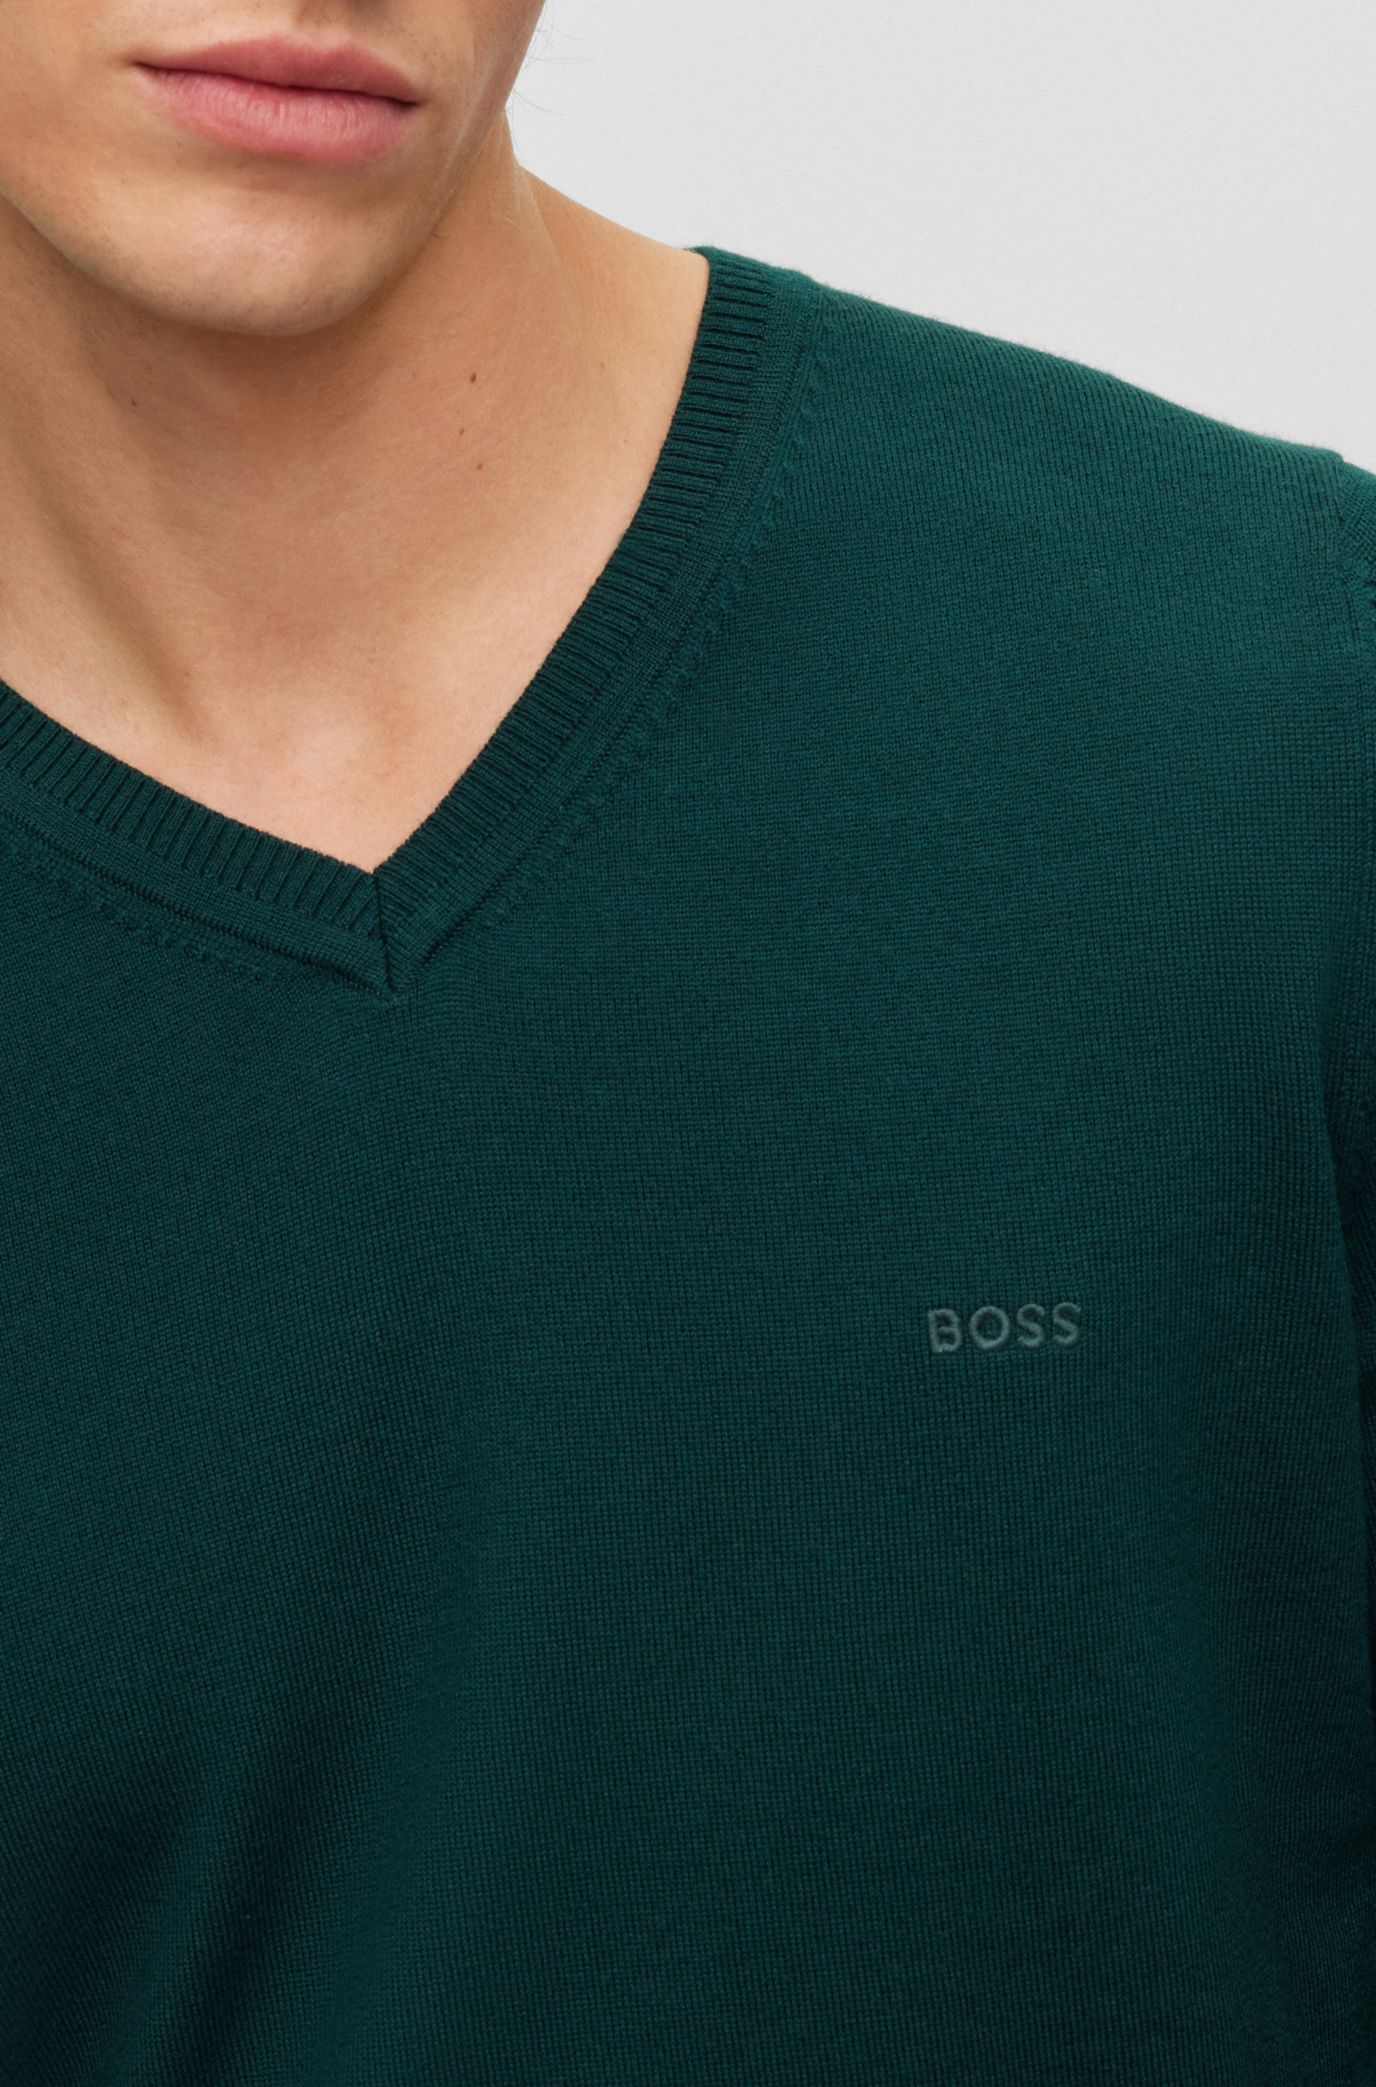  Lacoste Girls' Long Sleeve Multi-Logo Crewneck Sweatshirt:  Clothing, Shoes & Jewelry